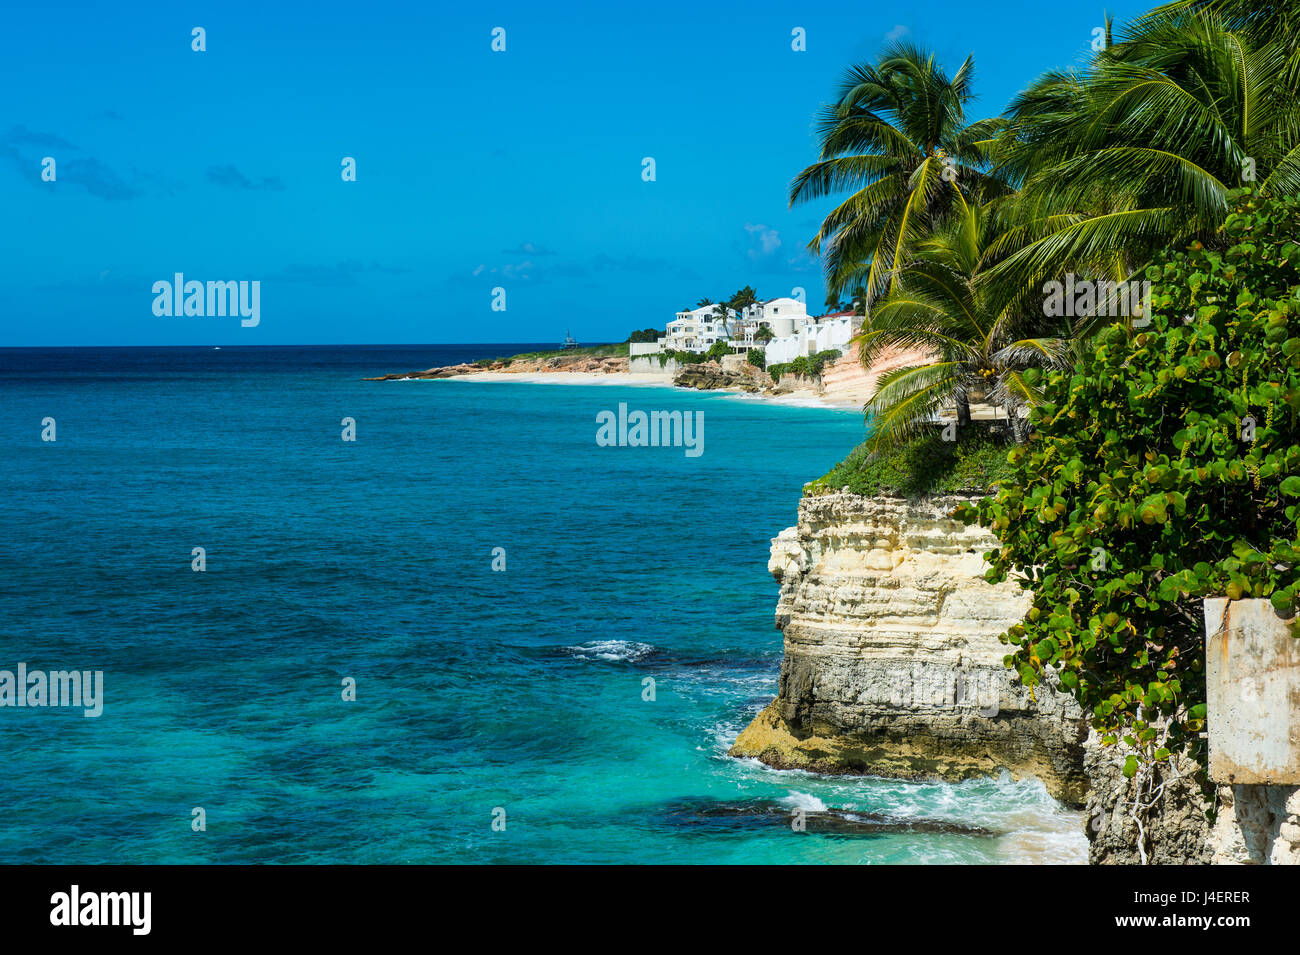 Vue sur les falaises de Mullet Bay, Sint Maarten, Antilles, Caraïbes, Amérique Centrale Banque D'Images